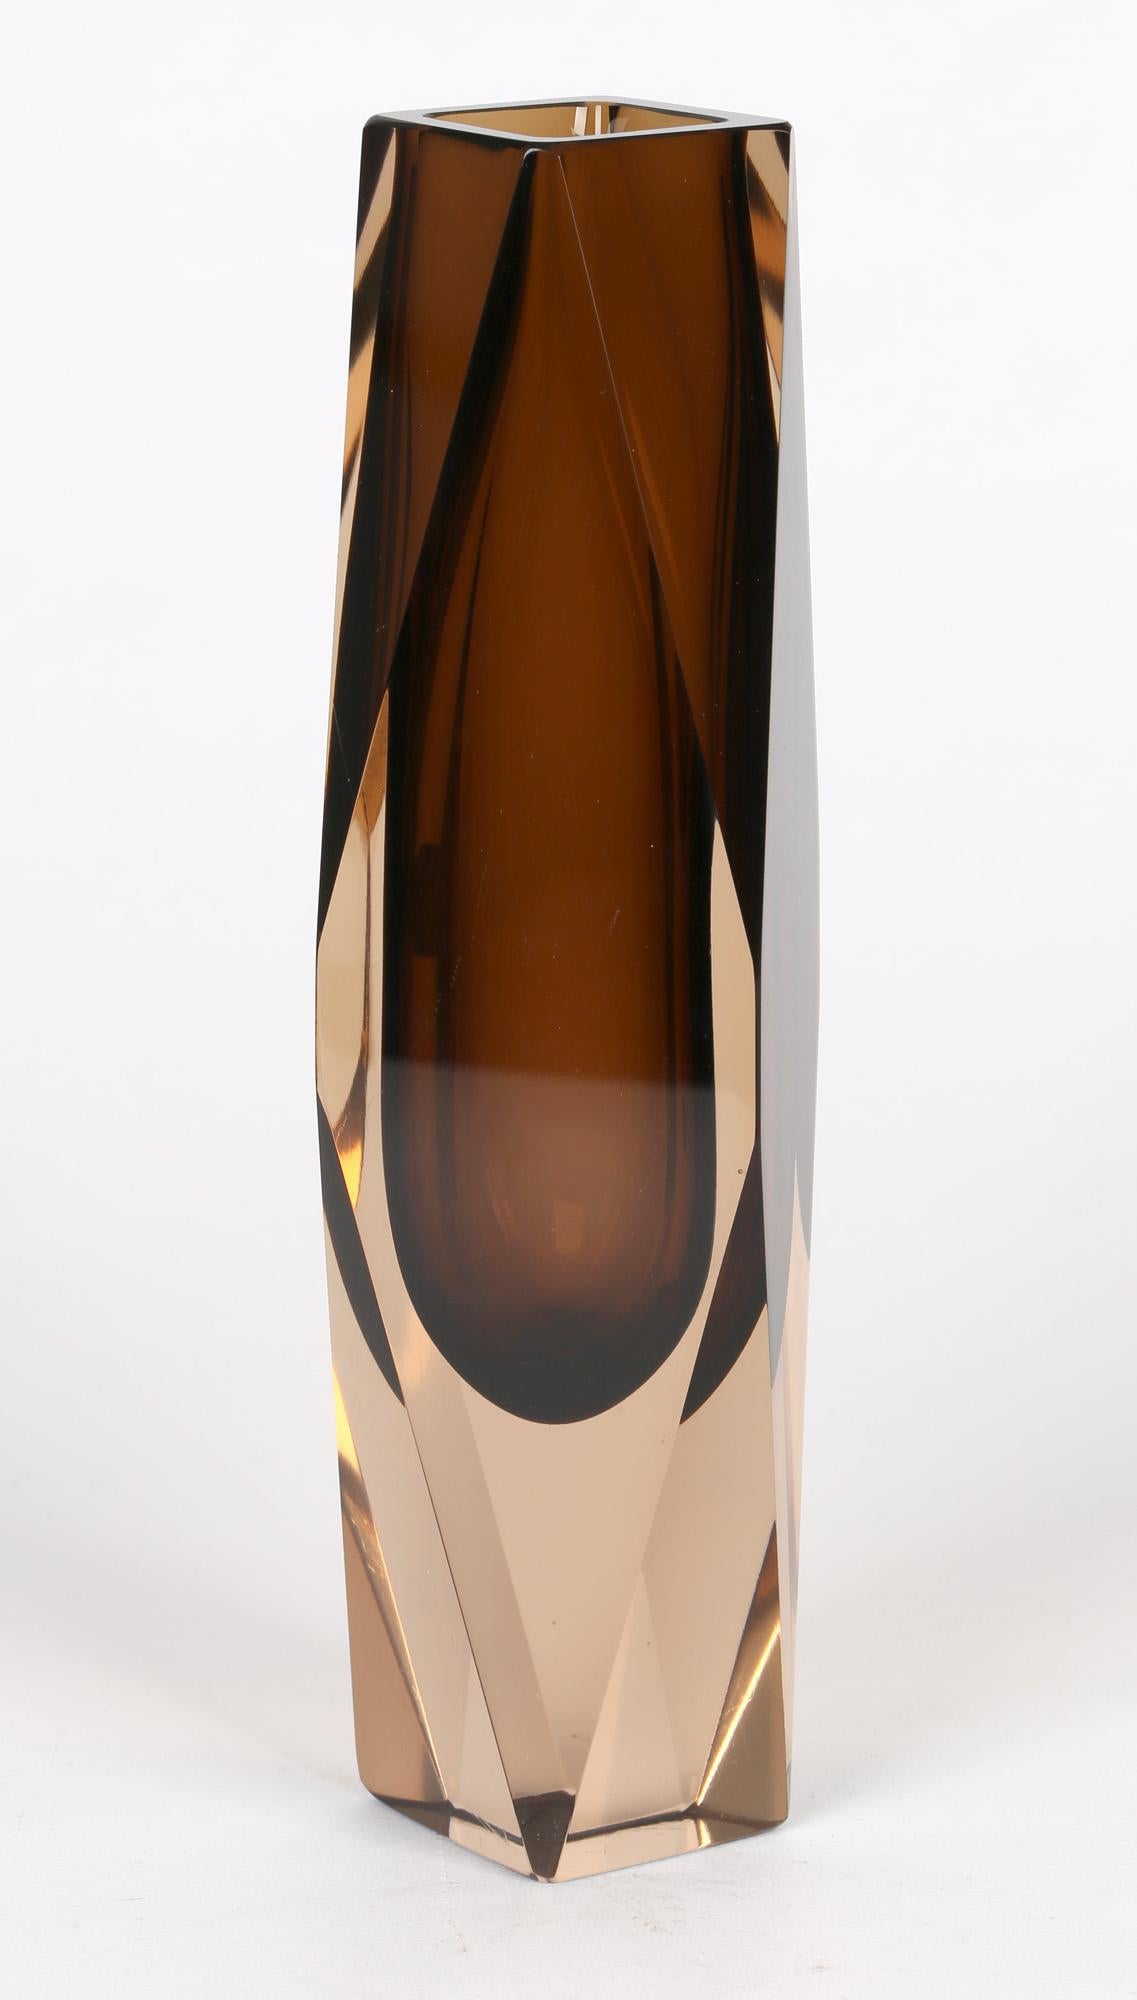 Italian V Nason & C Murano Cinnamon Sommerso Faceted Art Glass Vase